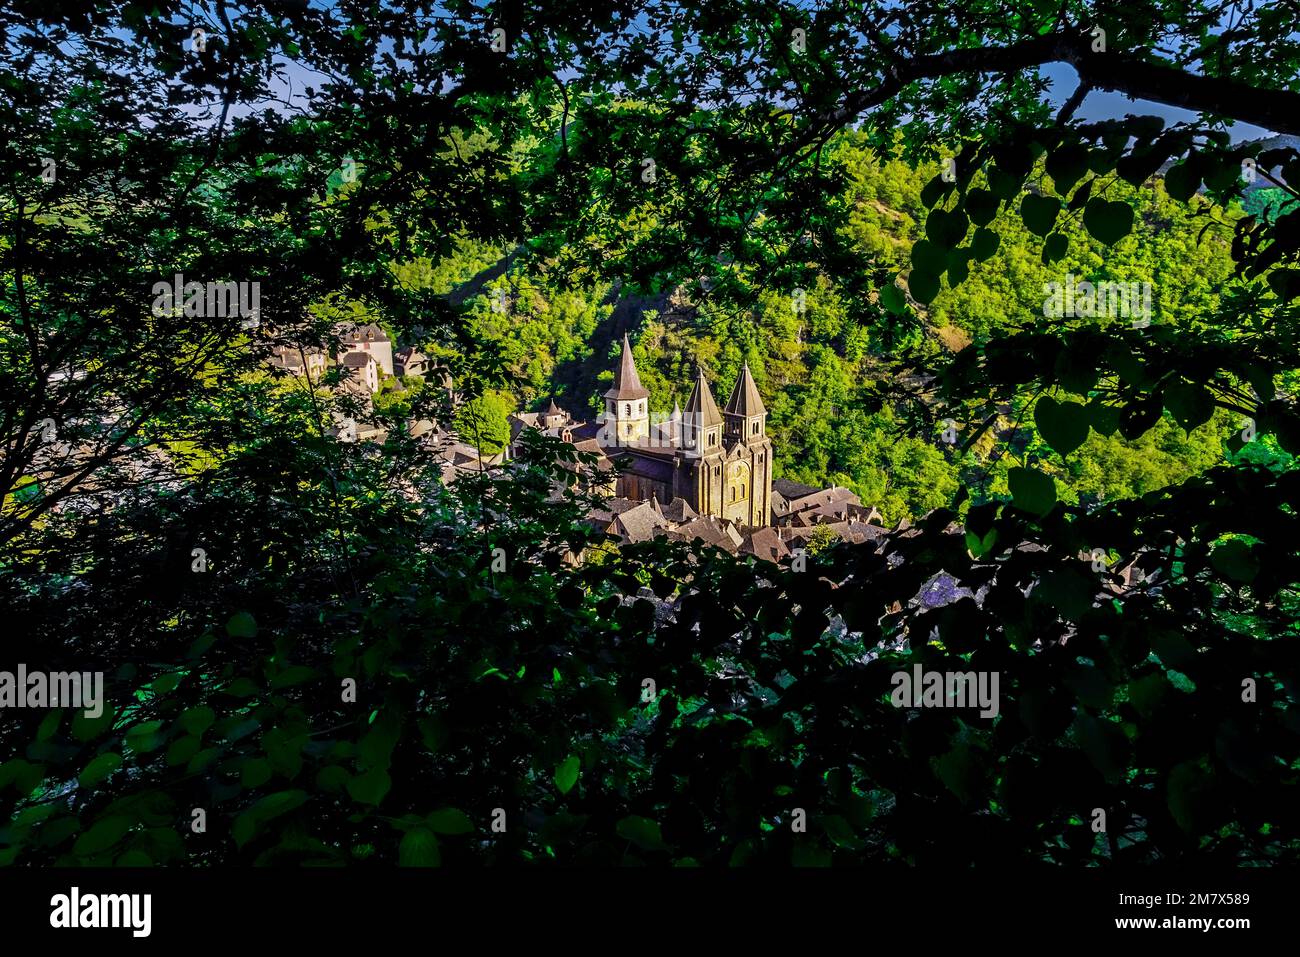 Vue imprenable sur le village de Conques et l'abbaye-église de Sainte-Foy le joyau de l'architecture romane, Occitanie, France. Banque D'Images